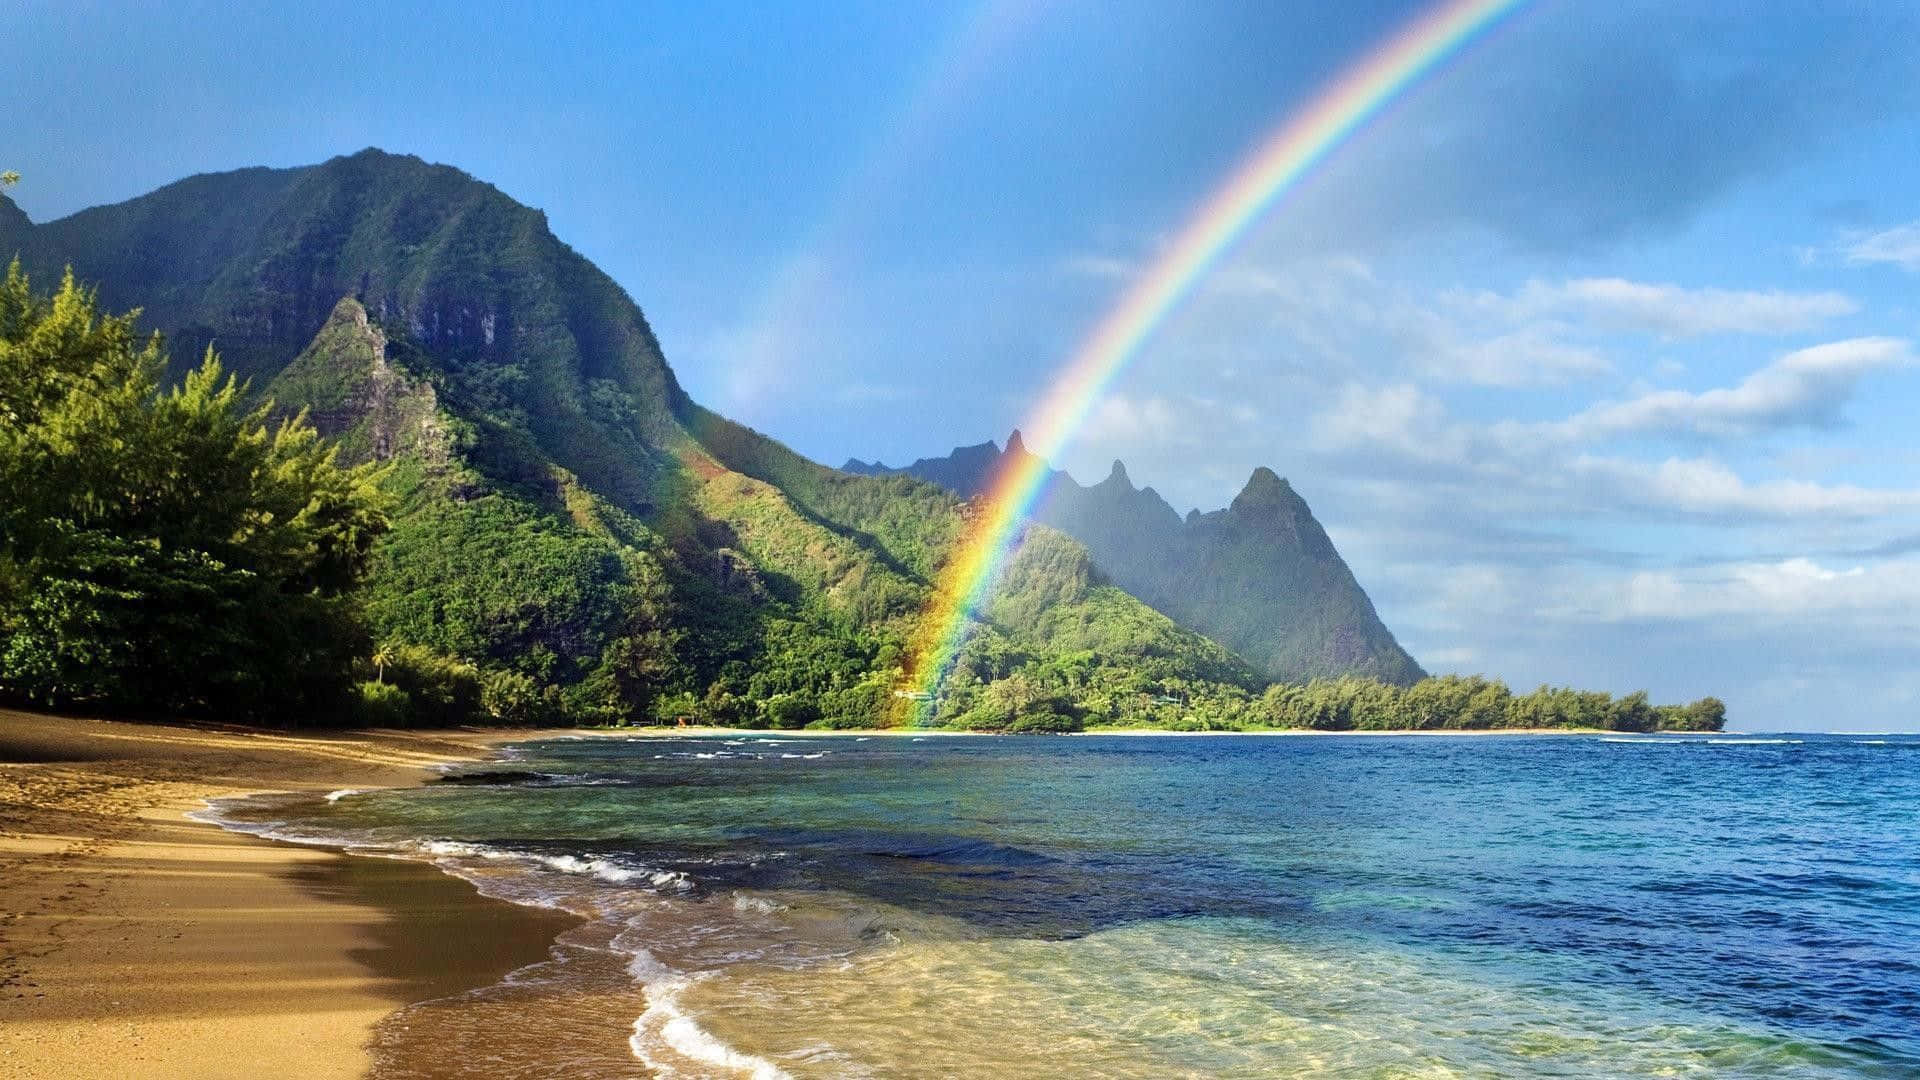 Nyd stemningen af Hawaii Beach med denne særlige baggrundsbillede. Wallpaper